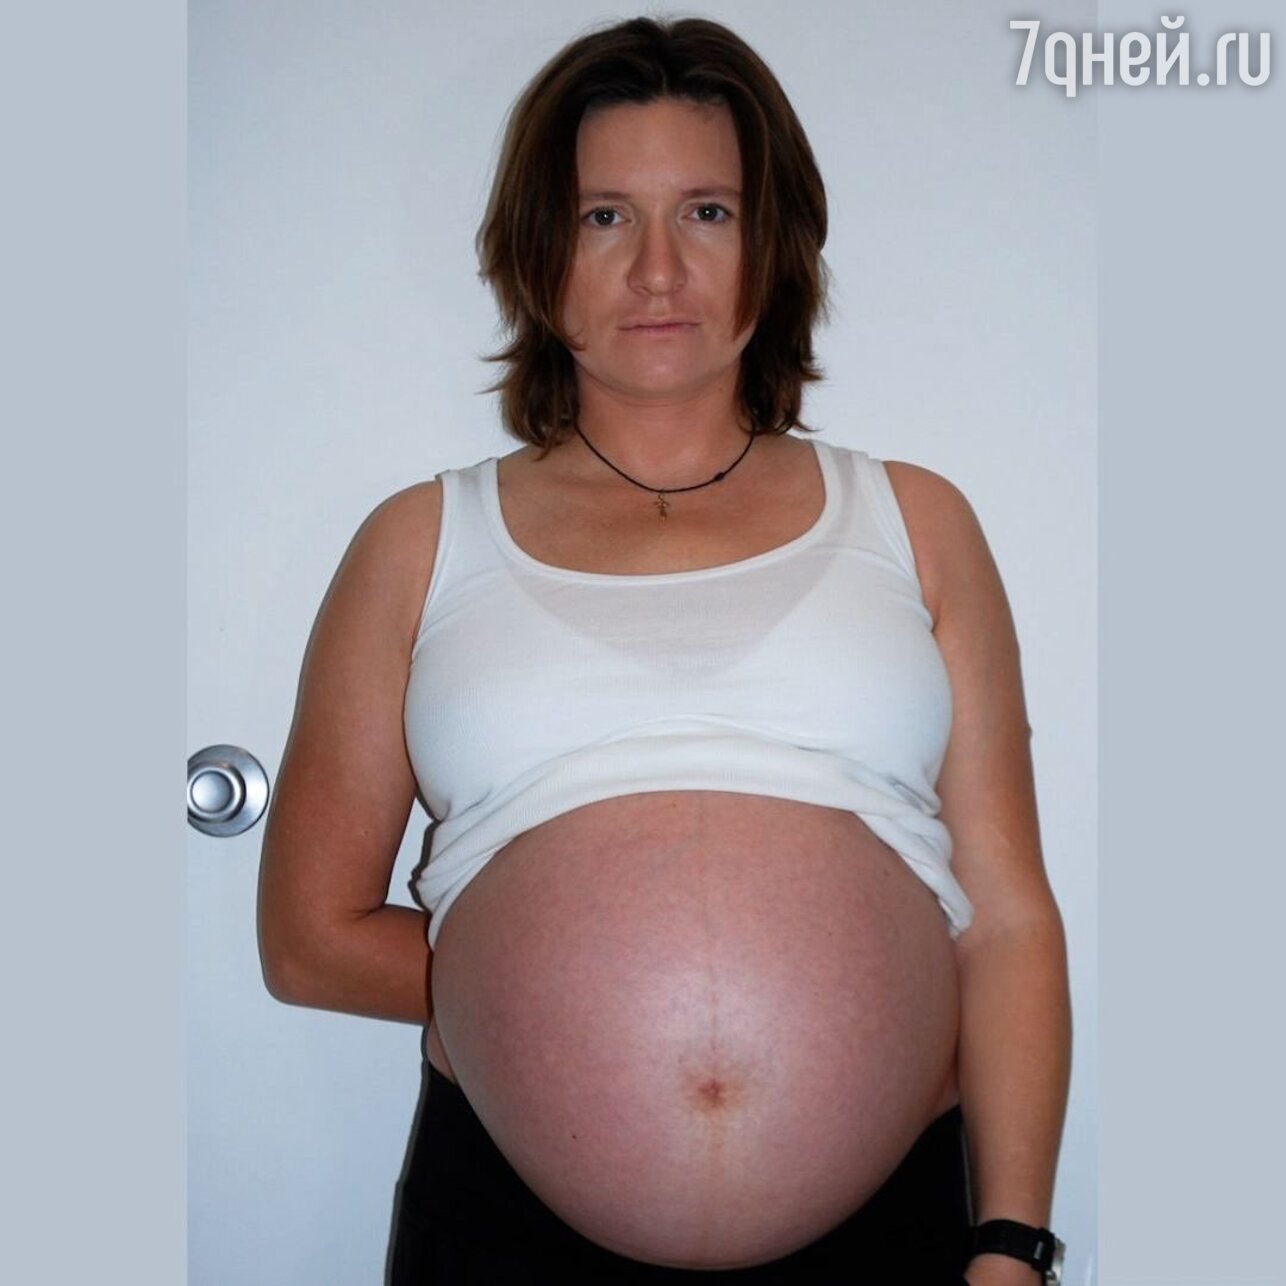 Это настоящее счастье!» Появилось фото глубоко беременной Арбениной -  7Дней.ру